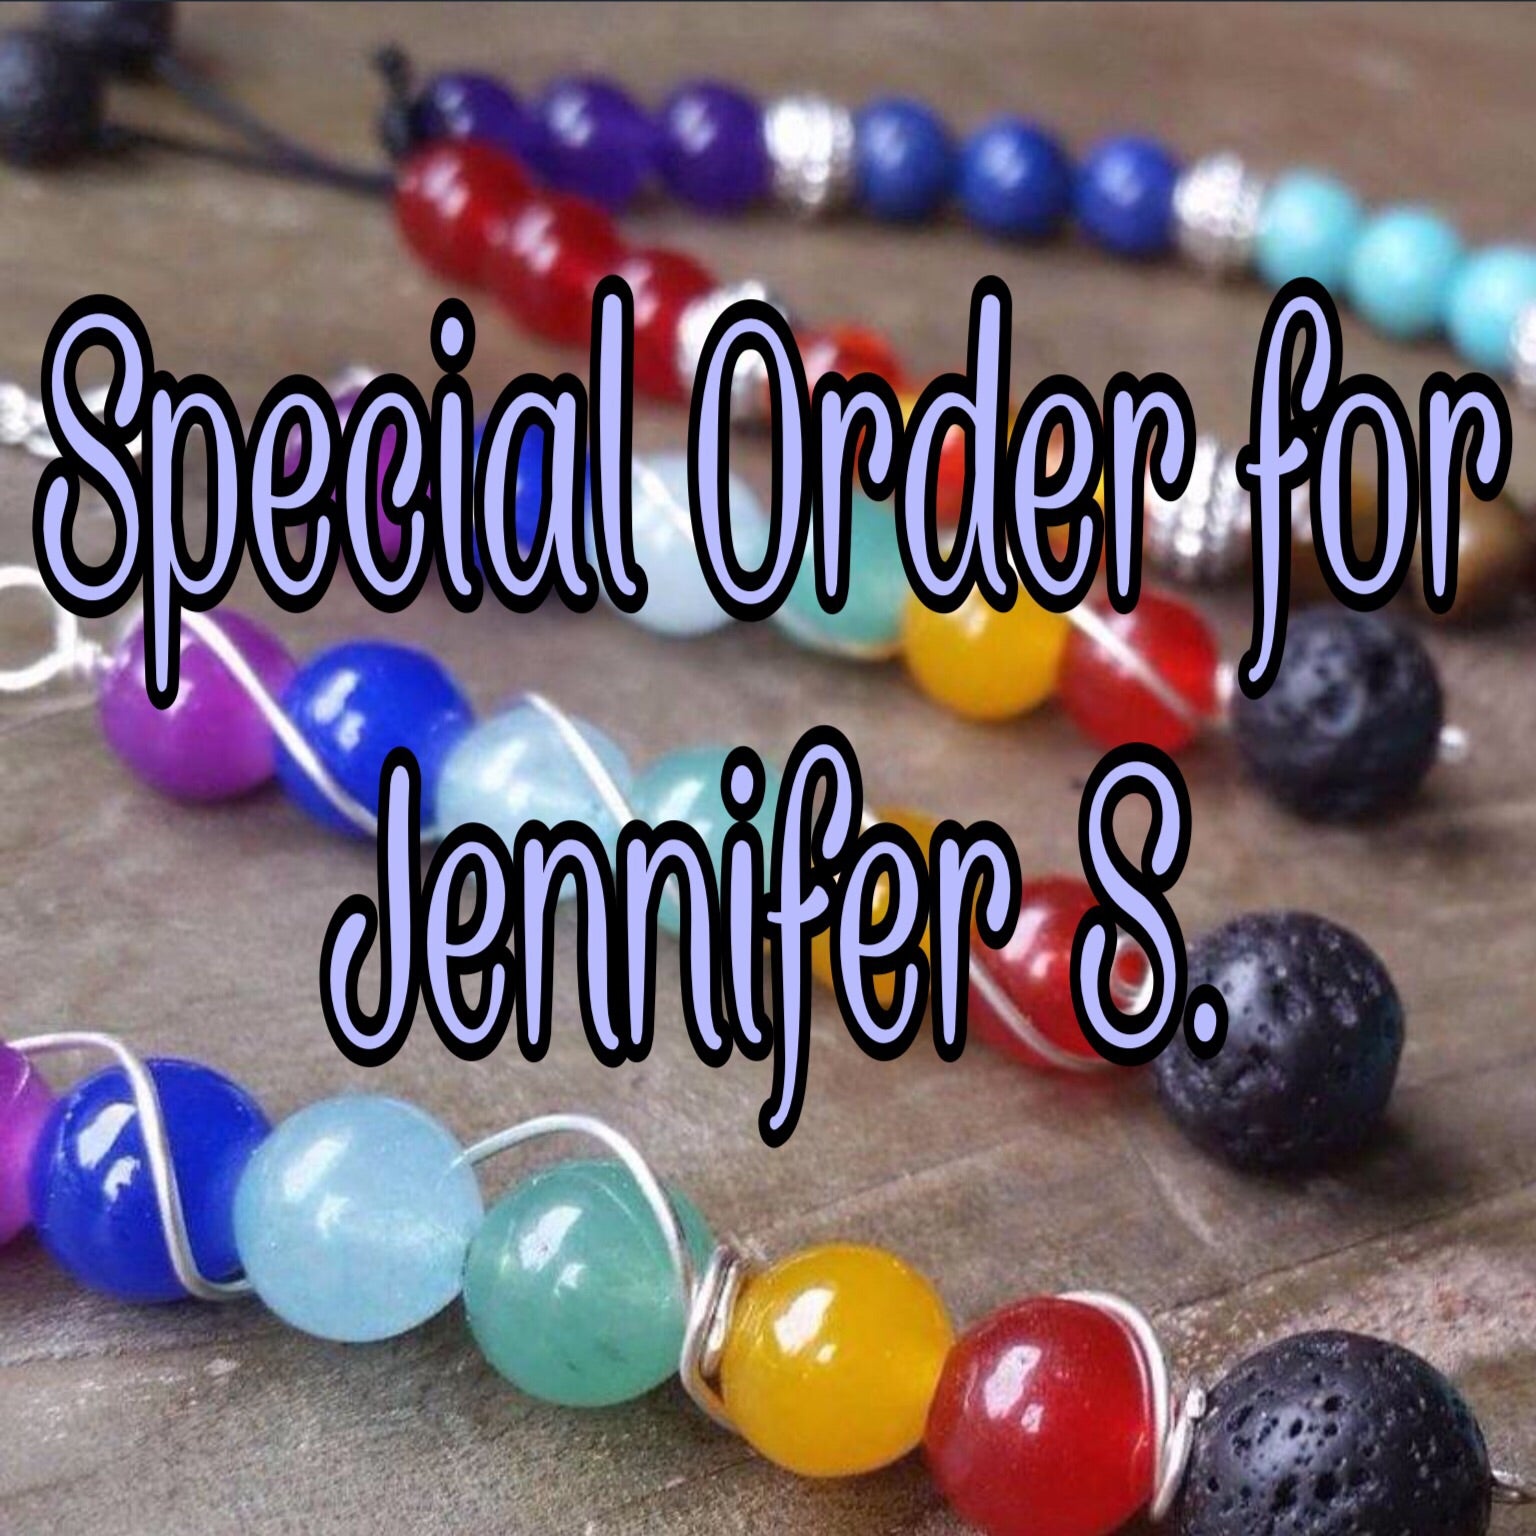 Special Order-Jennifer S.